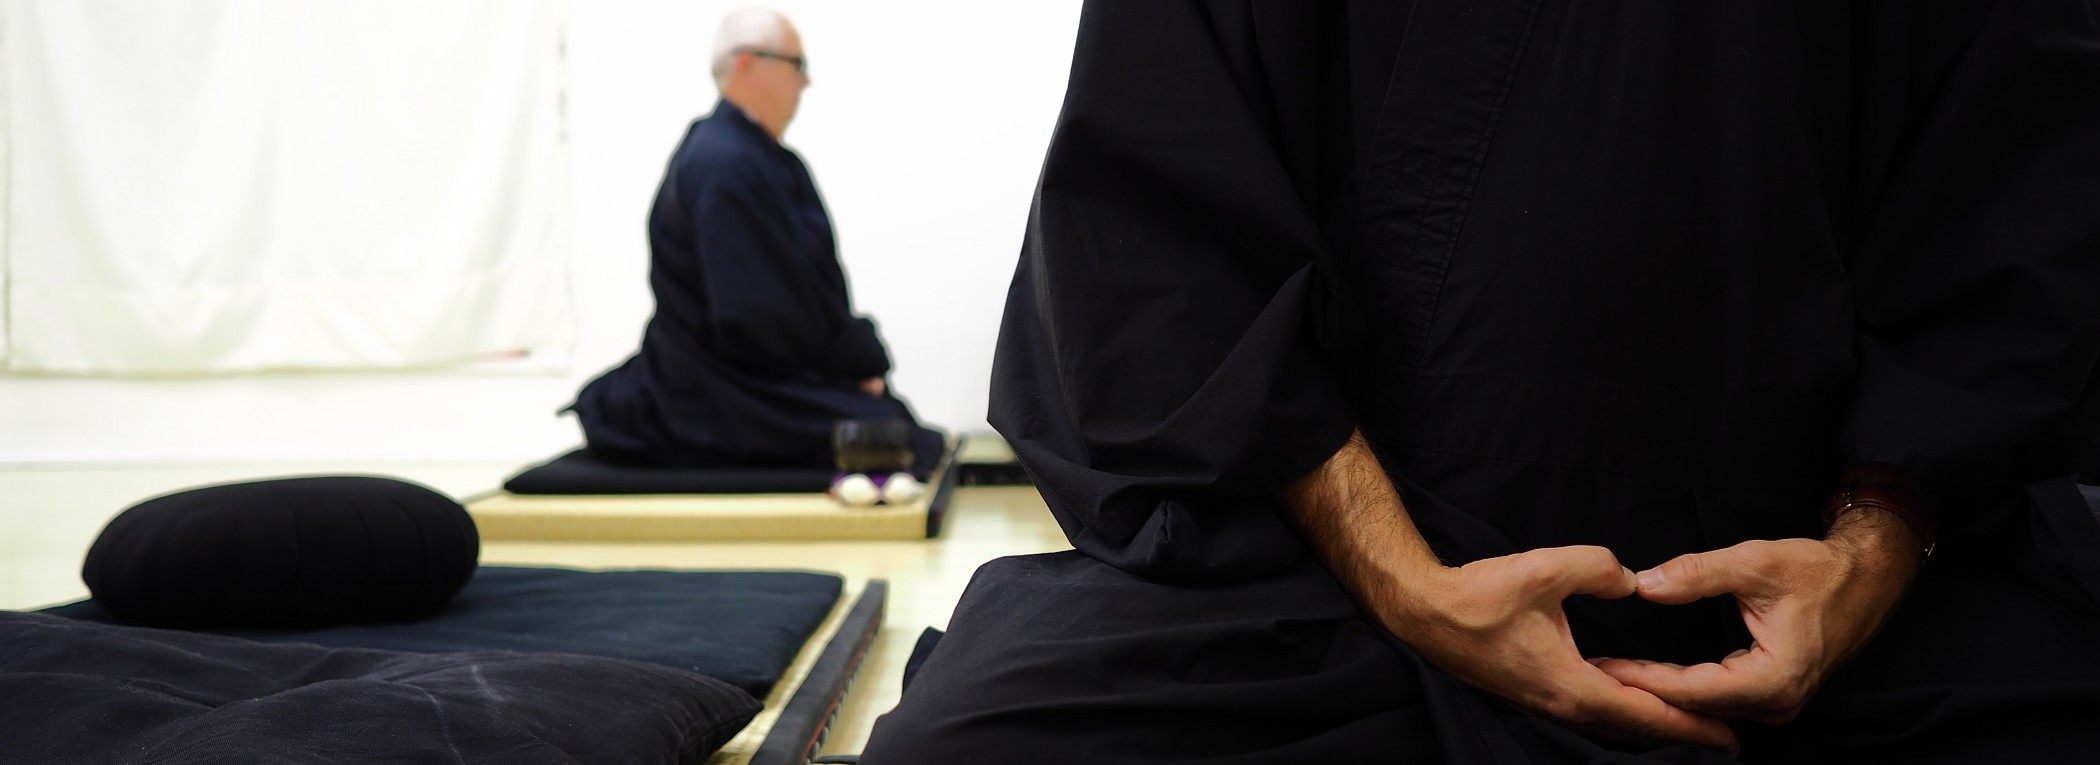 Foto di un praticante Zen presso Zen Udine. Posizione delle mani: mudra.  Fotografia di Keitto http://keitto.info- Tutti i diritti riservati